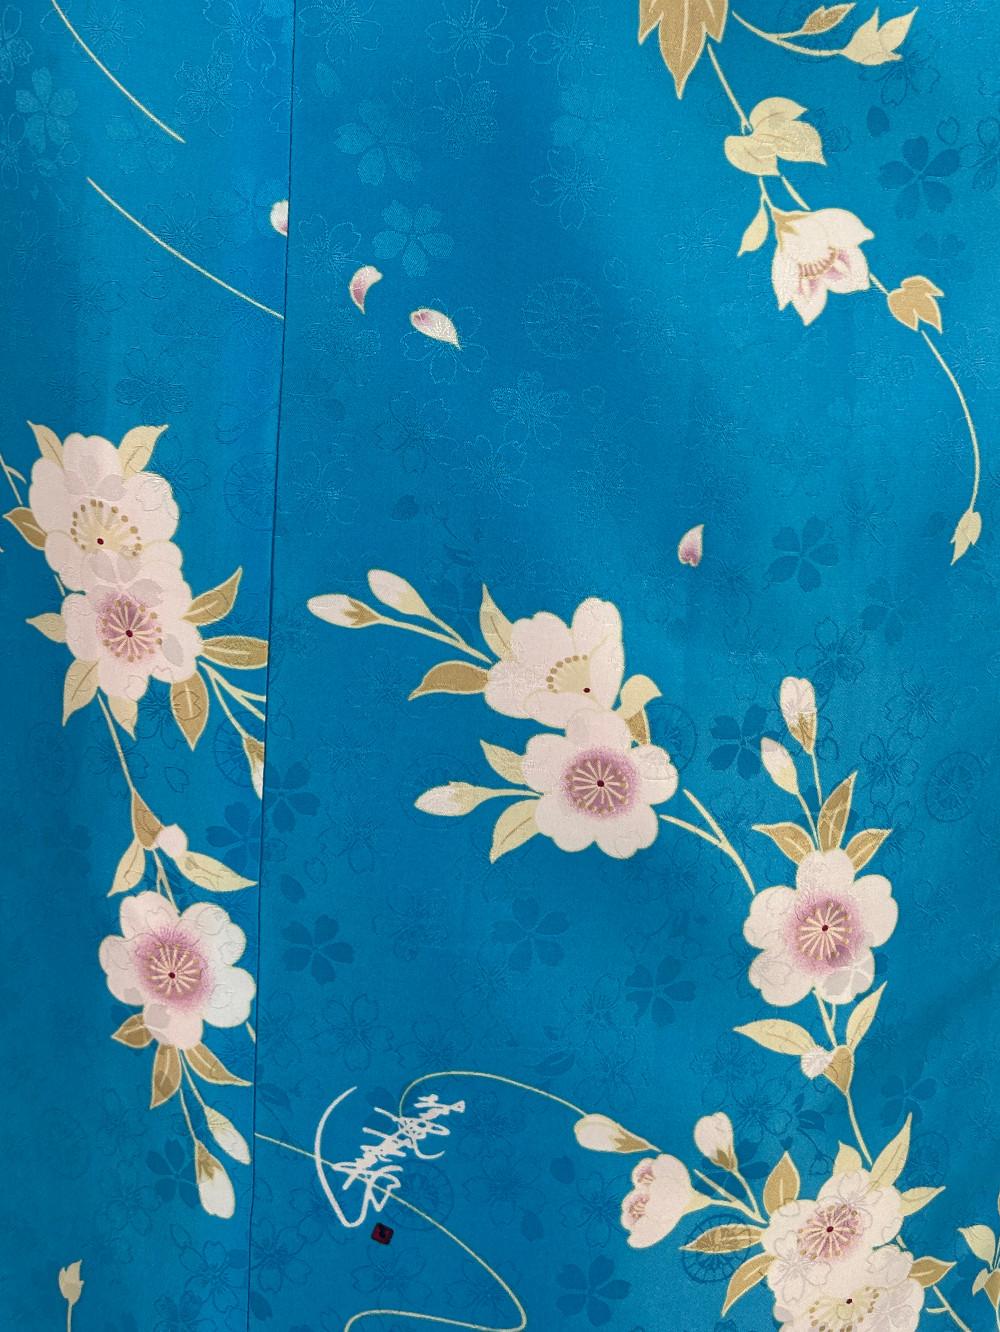 衿つき着物(リボン帯付き) [凛 青] ※着物単品 ¥12,000画像